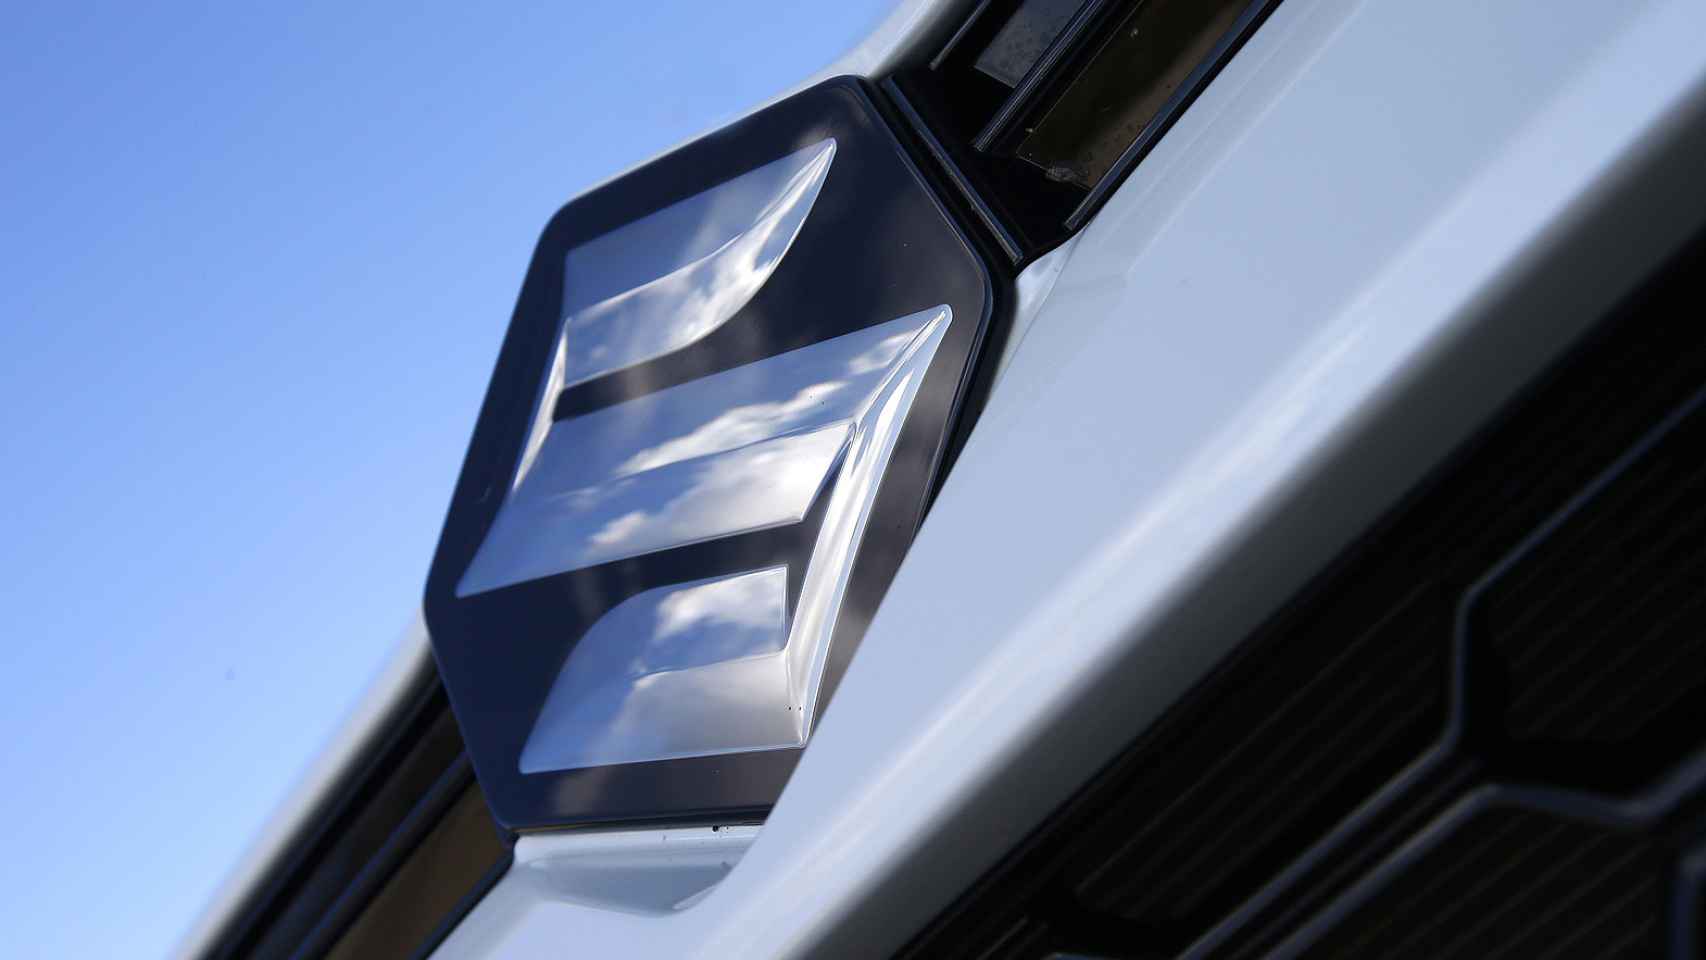 Emblema de Suzuki.